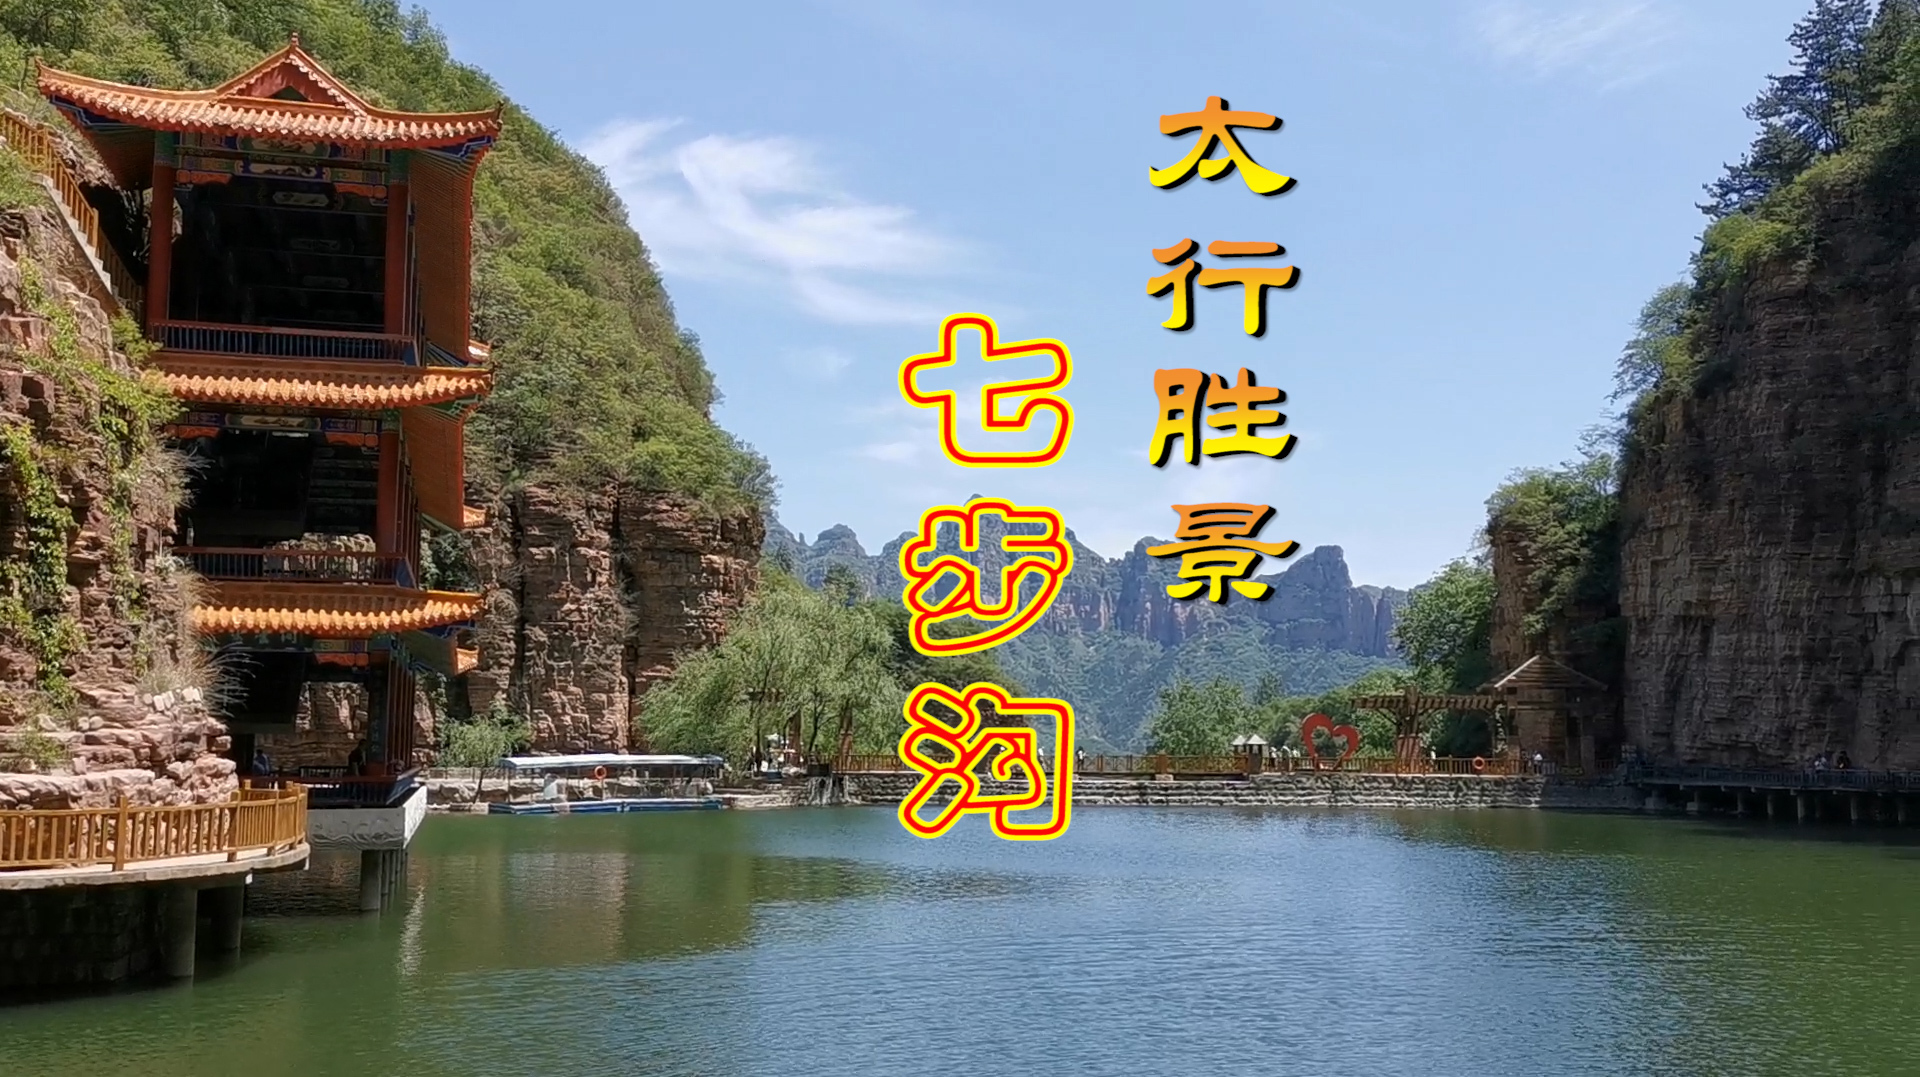 自驾游河北邯郸著名景点《七步沟风景区》一家人短途出游最佳选择